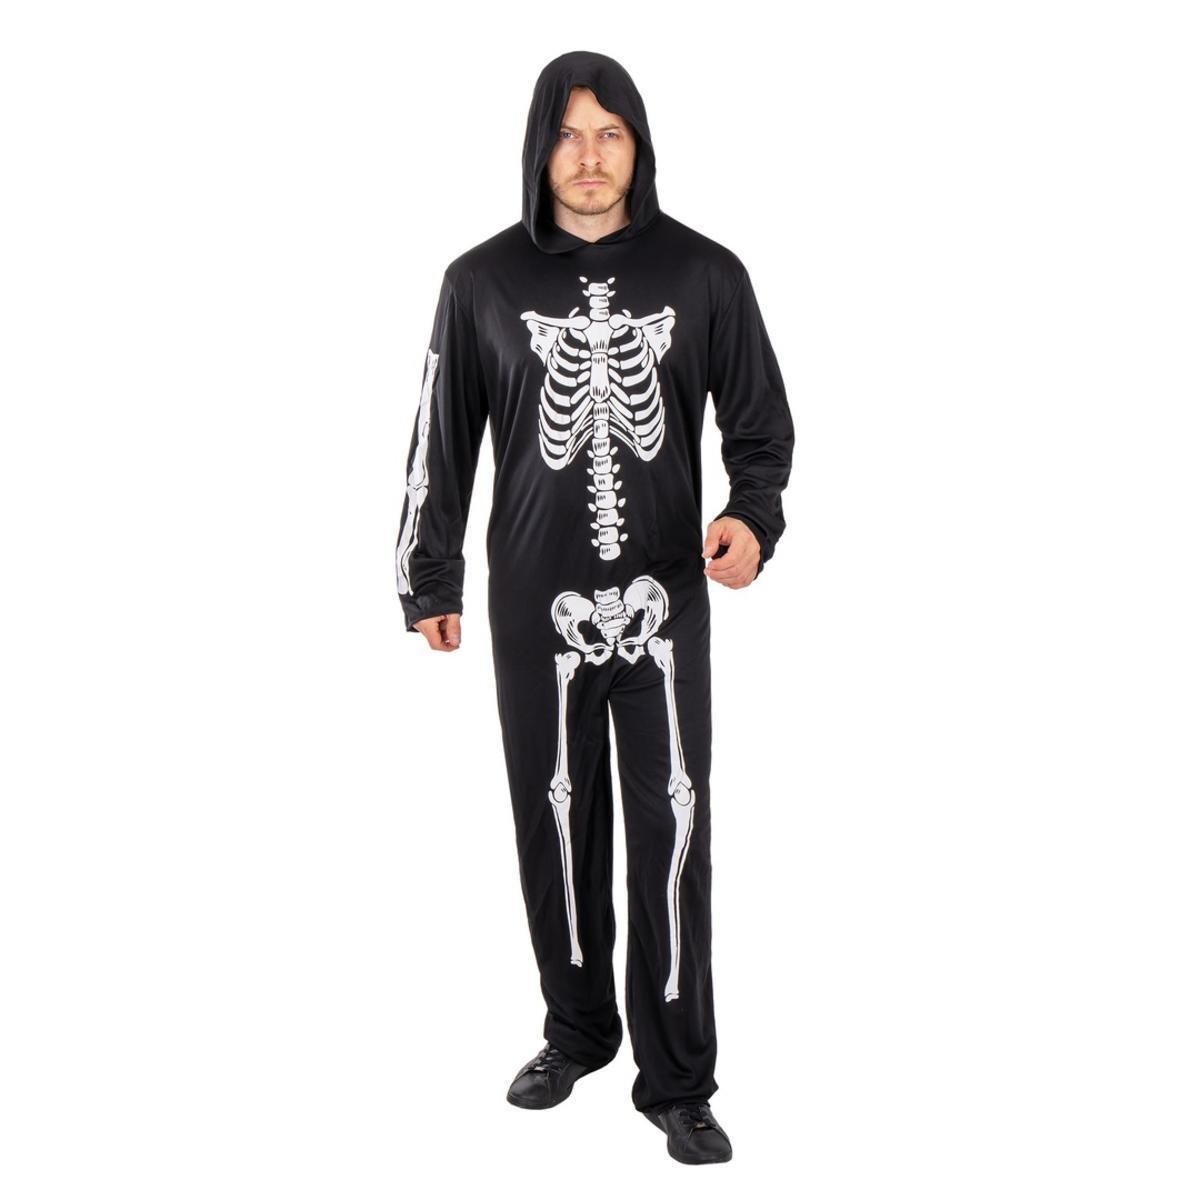 Costume-combinaison de squelette - Taille ado unique (140 à 160 cm) - L 38 x H 2 x l 24 cm - Noir - PTIT CLOWN